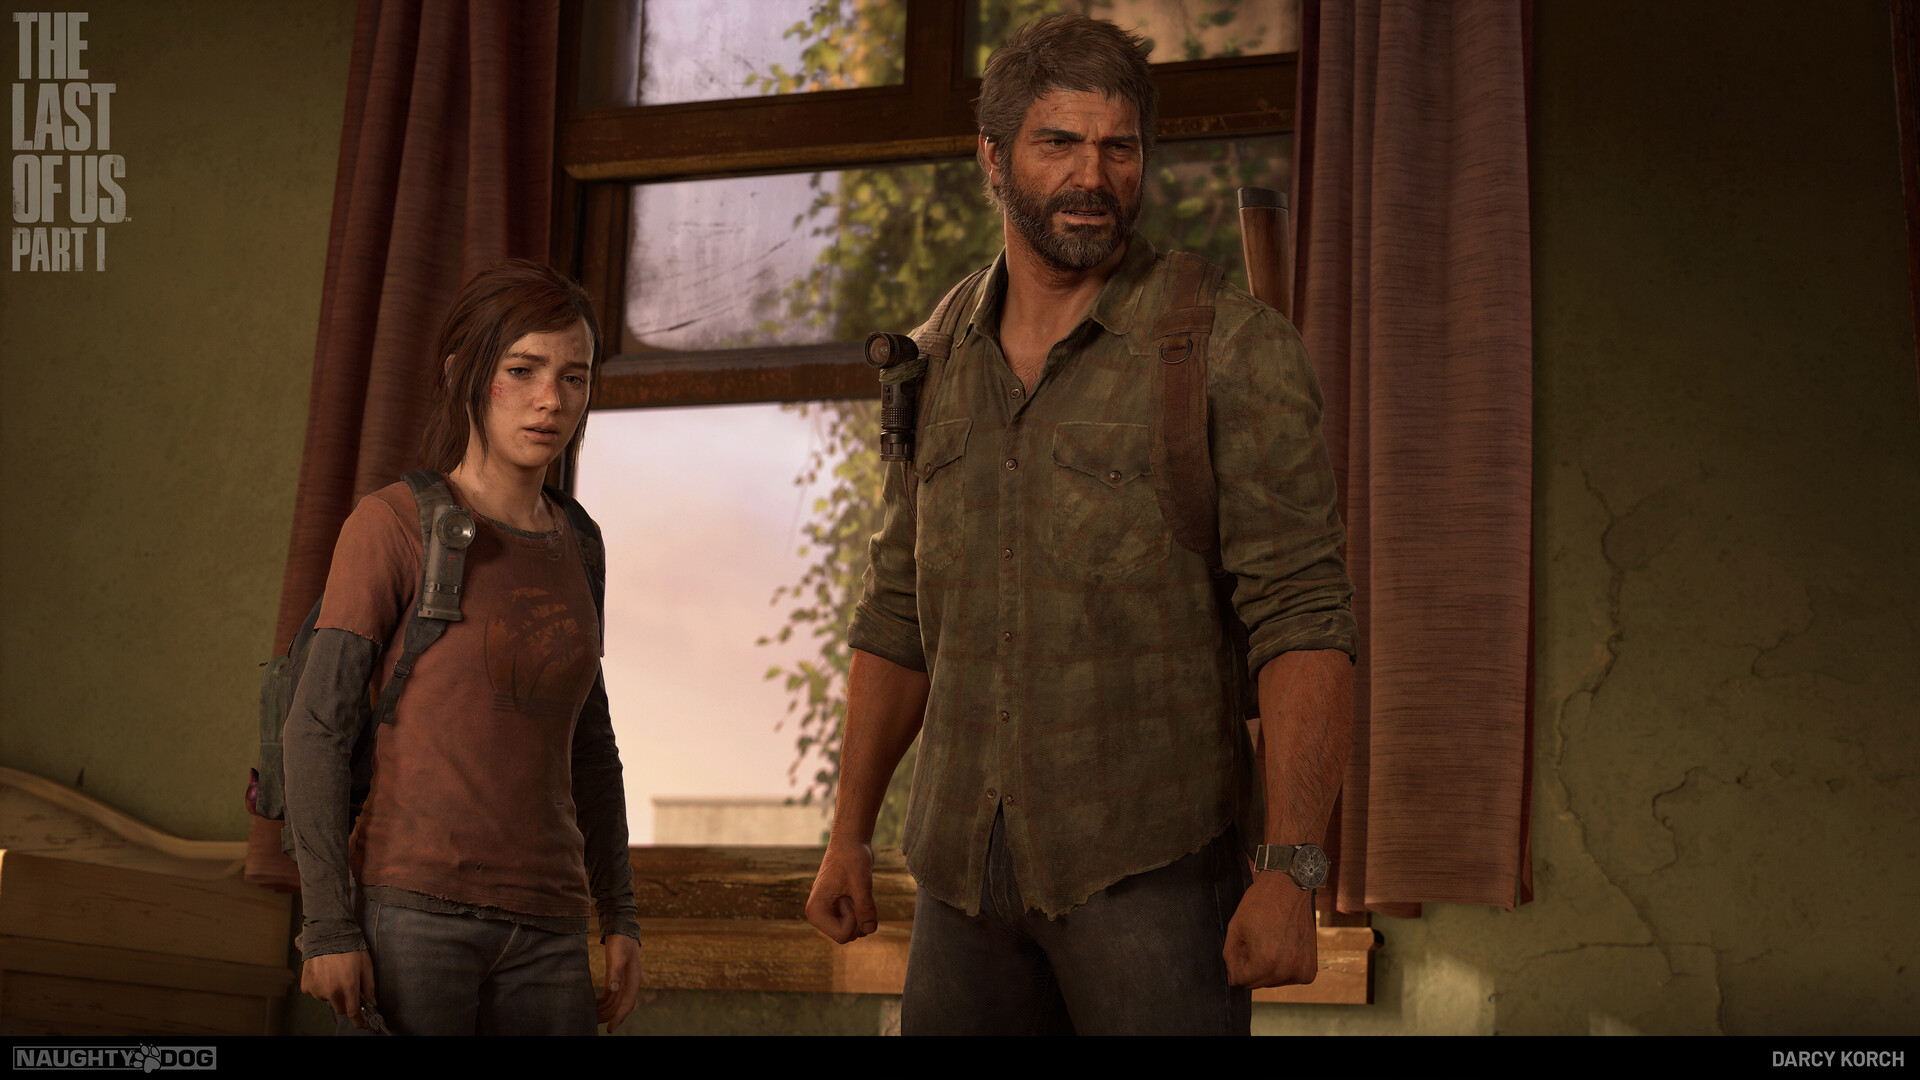 Artista une cosplay de The Last of Us, educação e responsabilidade ambiental